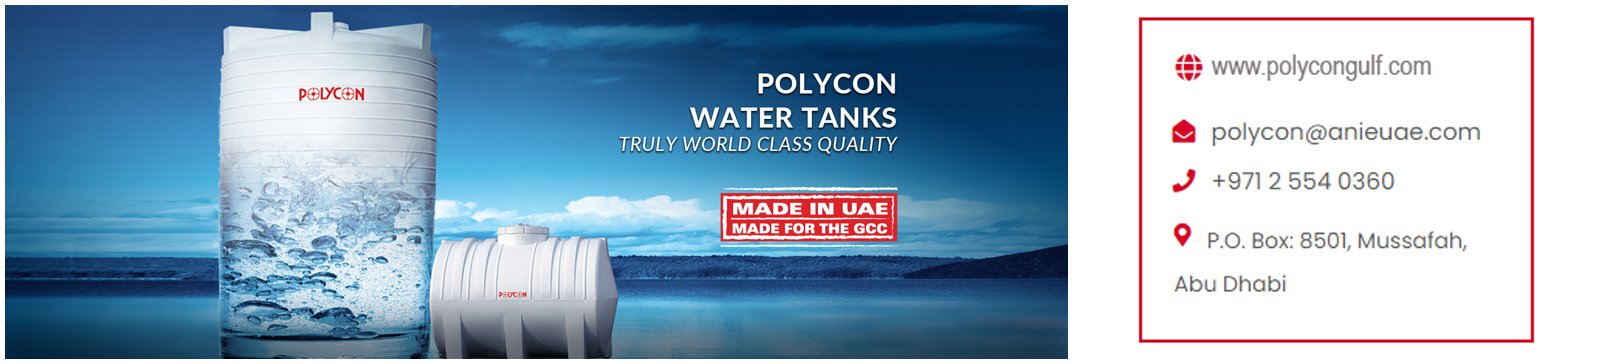 Polycon Gulf LTD cover